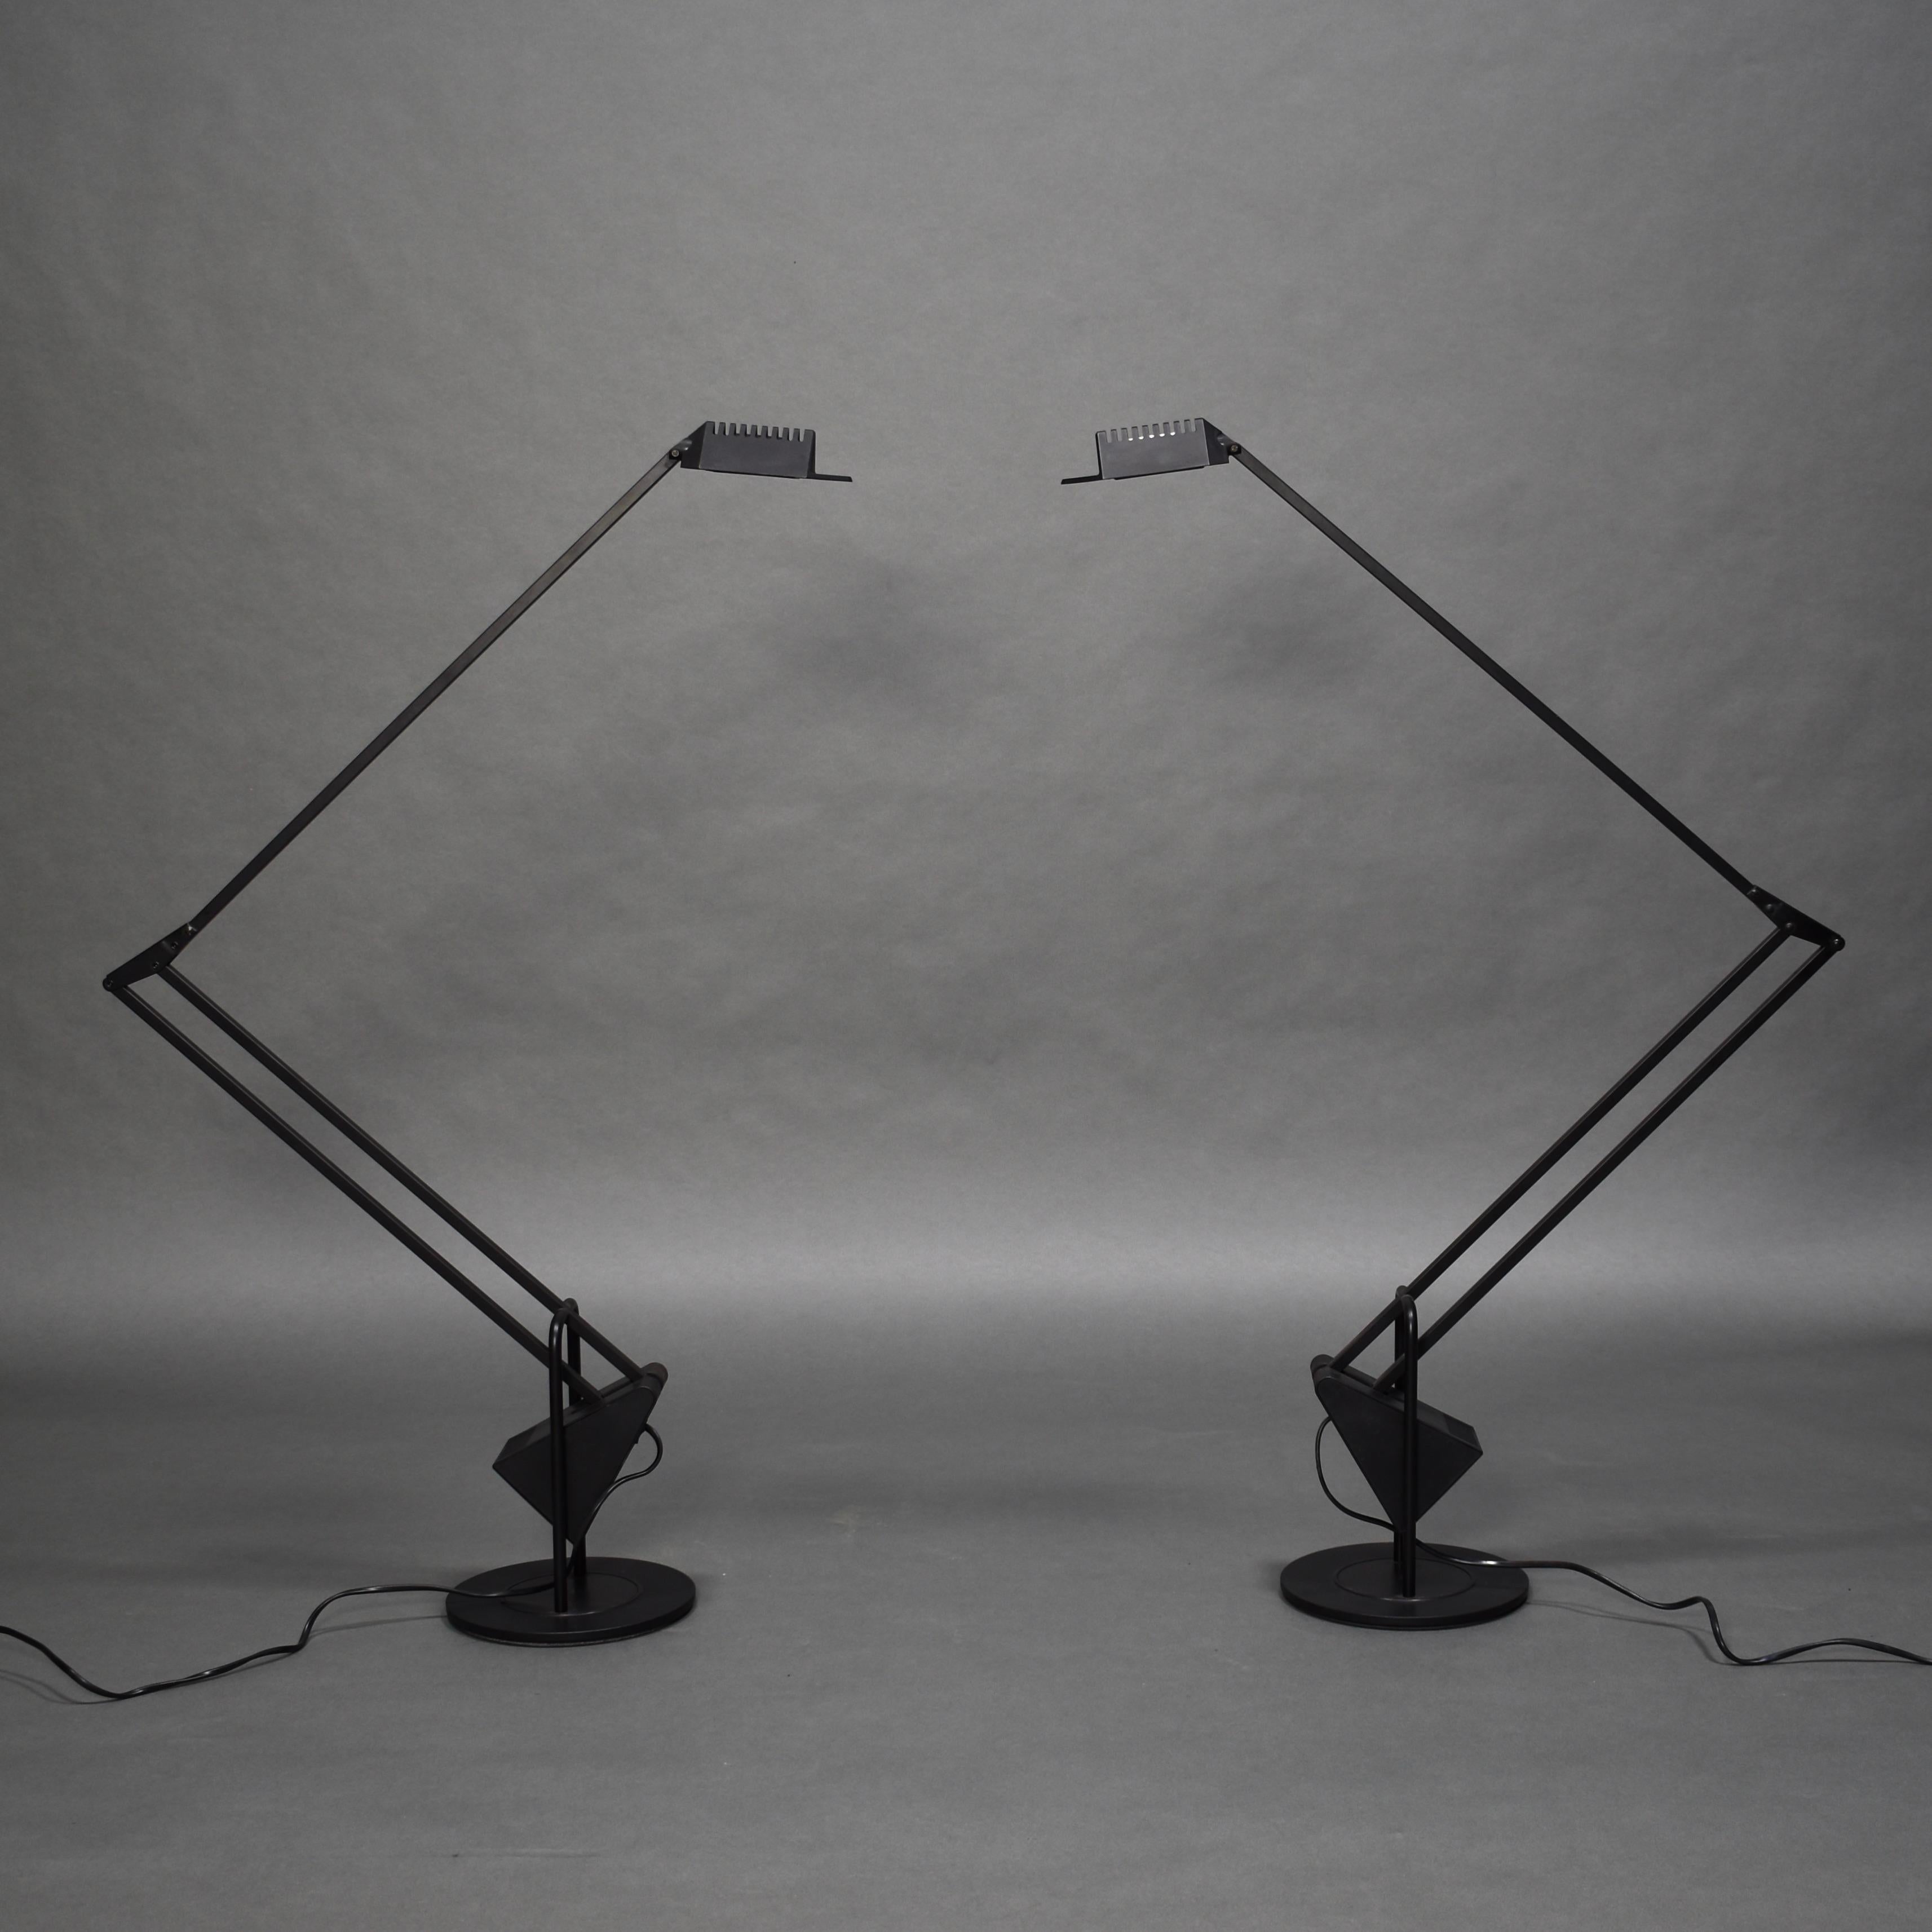 Paire de lampes de table / lampadaires à contrepoids 'Flamingo' par Fridolin Naef pour Luxo - Italie, années 1980. 
La hauteur des lampes permet également de les utiliser comme lampadaires.

Concepteur : Fridolin Naef

Fabricant : Luxo

Pays